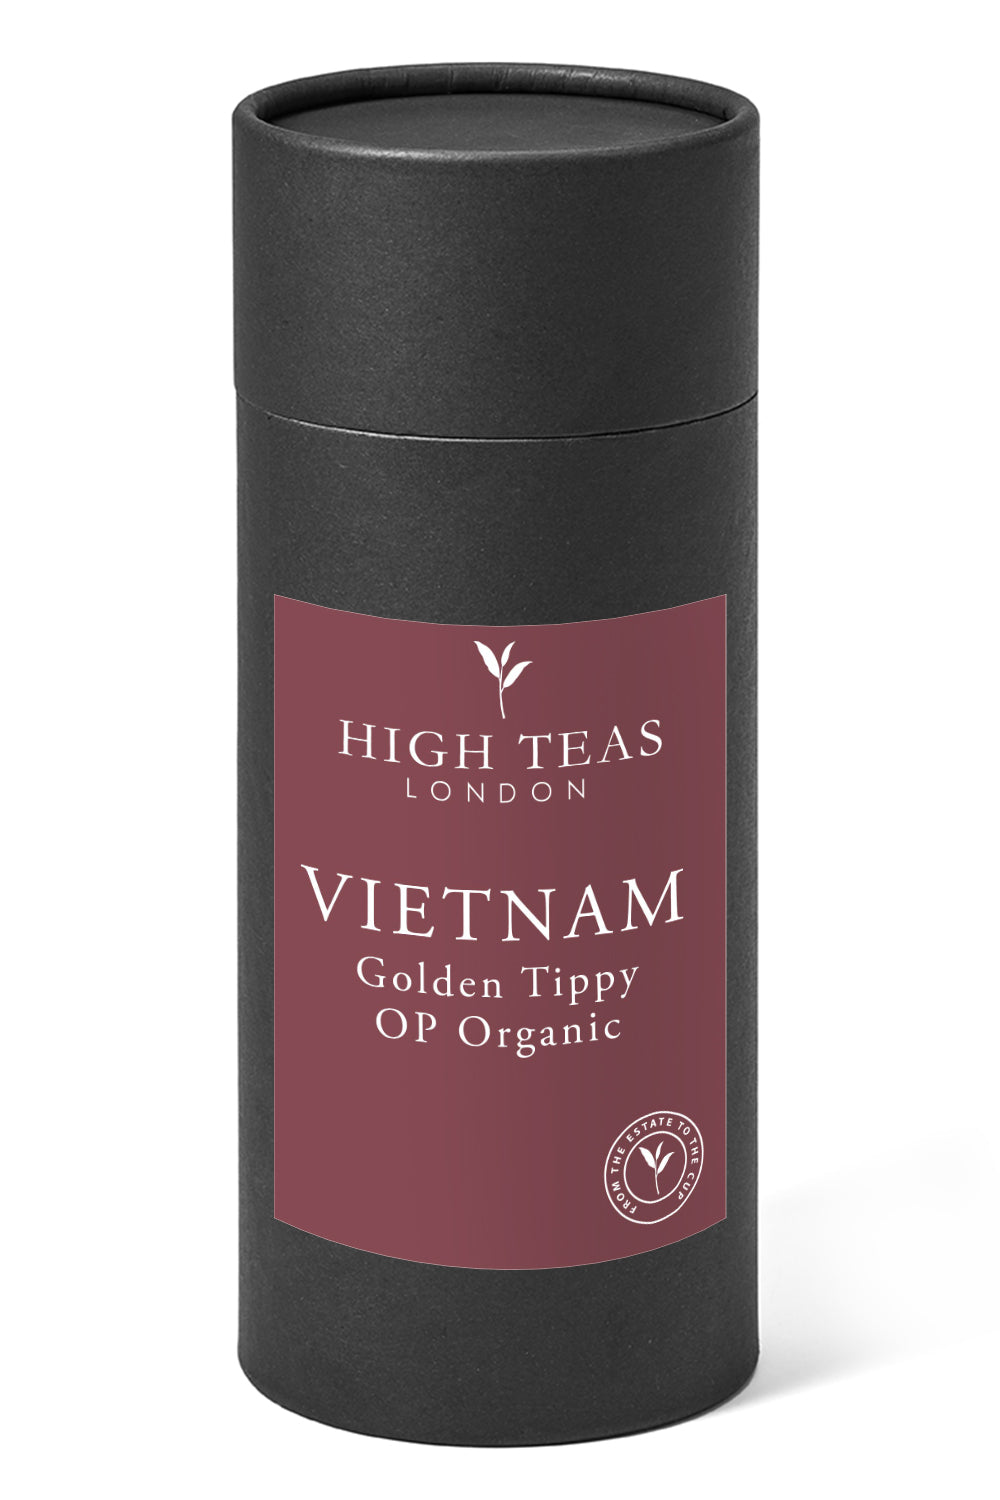 Vietnam Golden Tippy OP Organic-150g gift-Loose Leaf Tea-High Teas